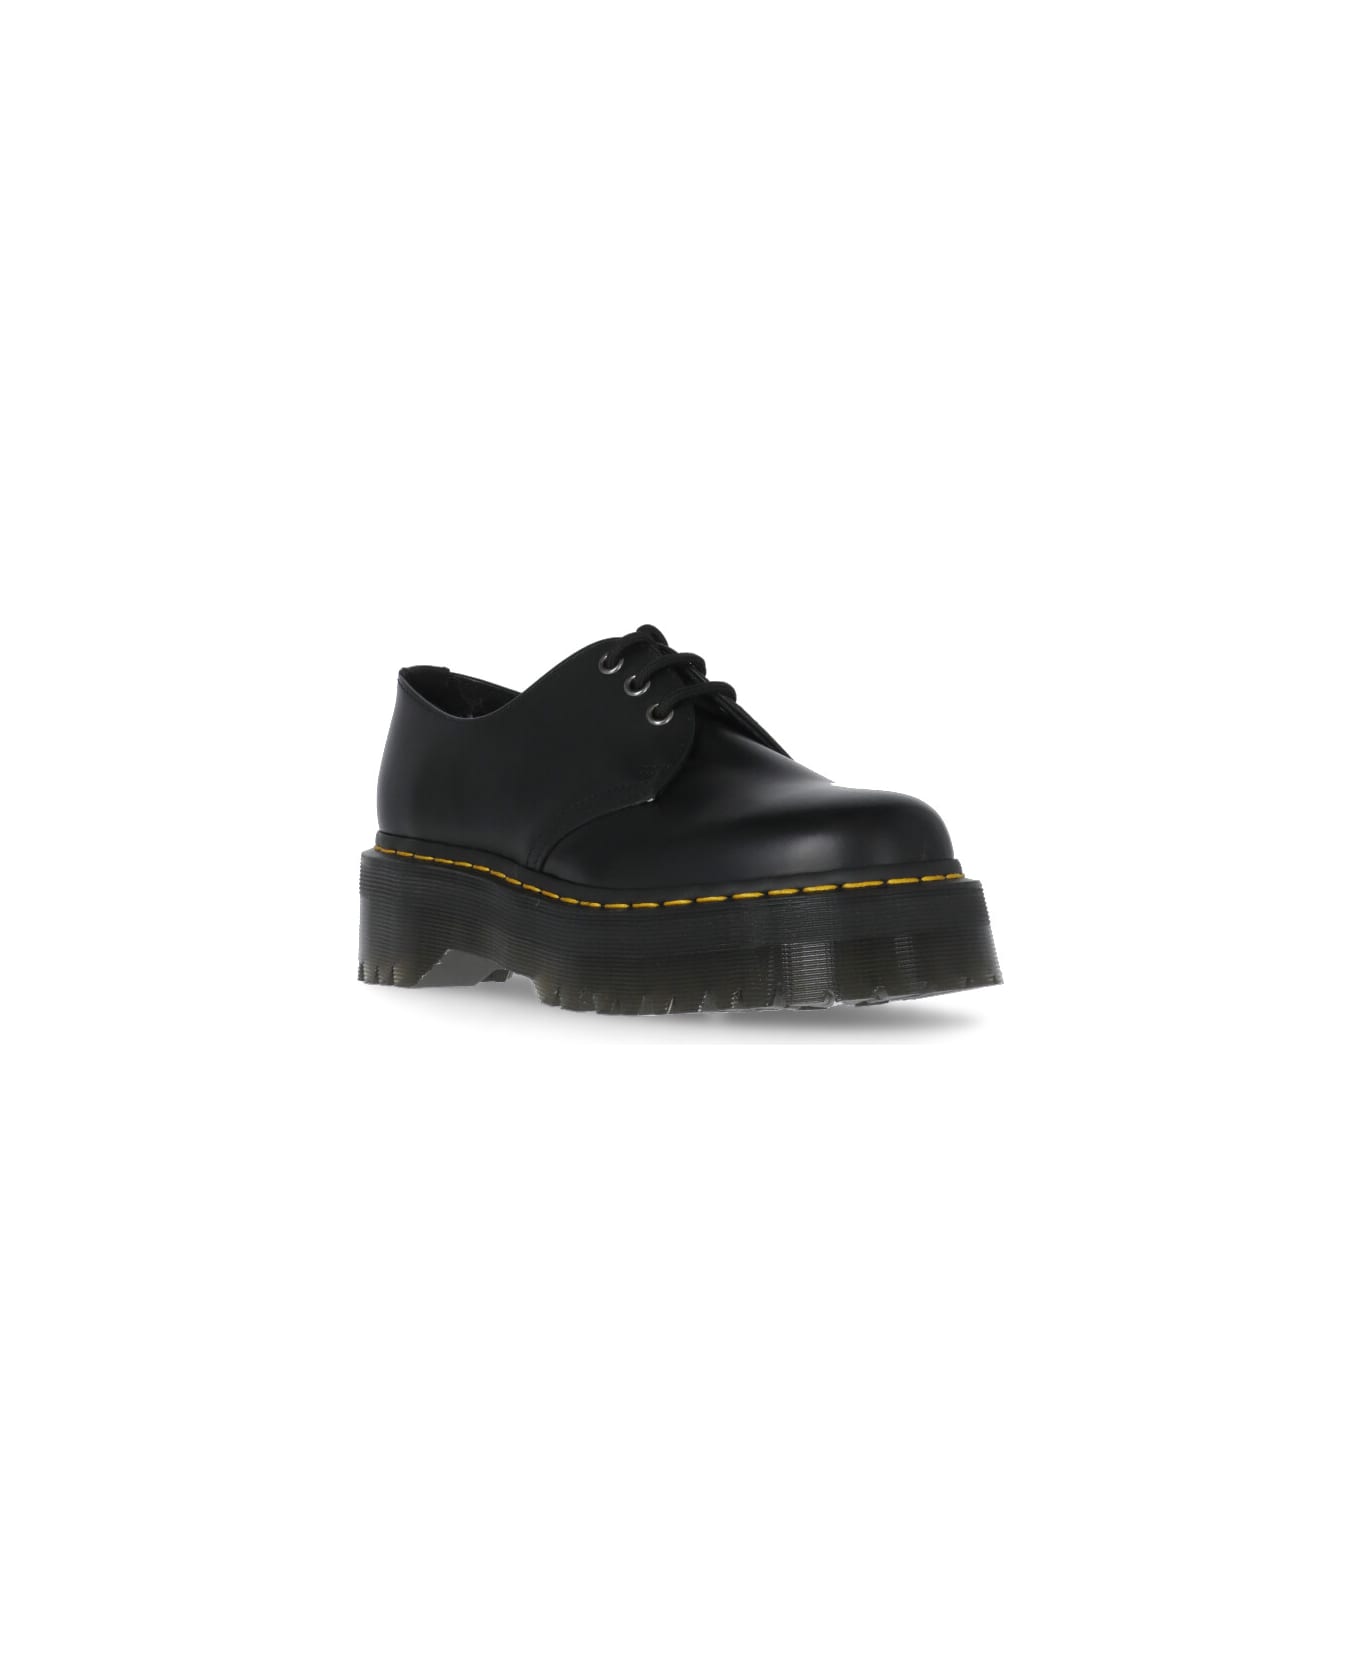 Dr. Martens 1461 Quad Platform Leather Shoes - Black name:464